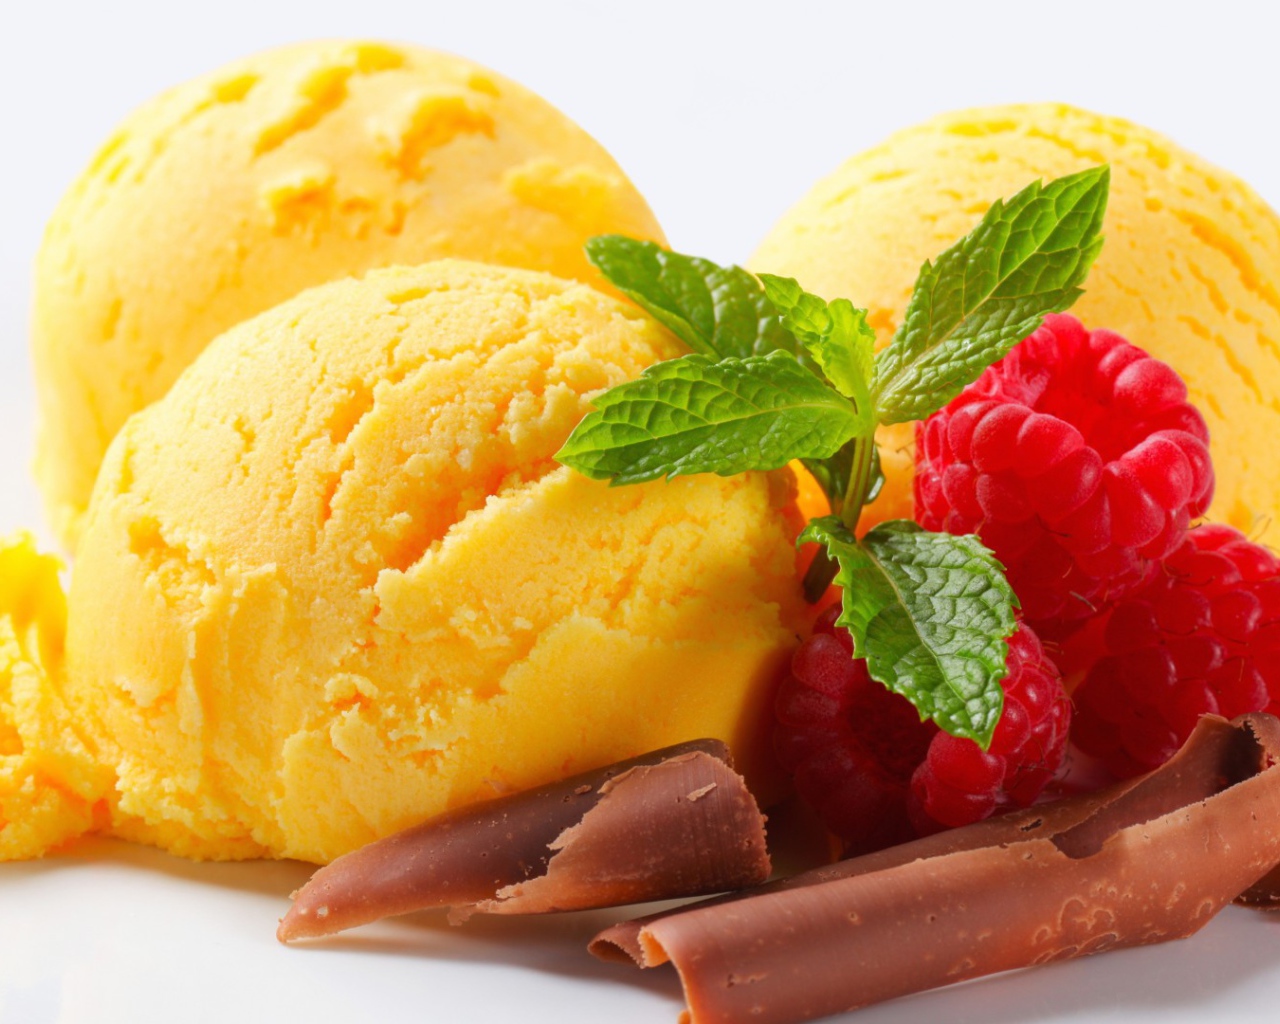 Lemon ice cream with raspberry